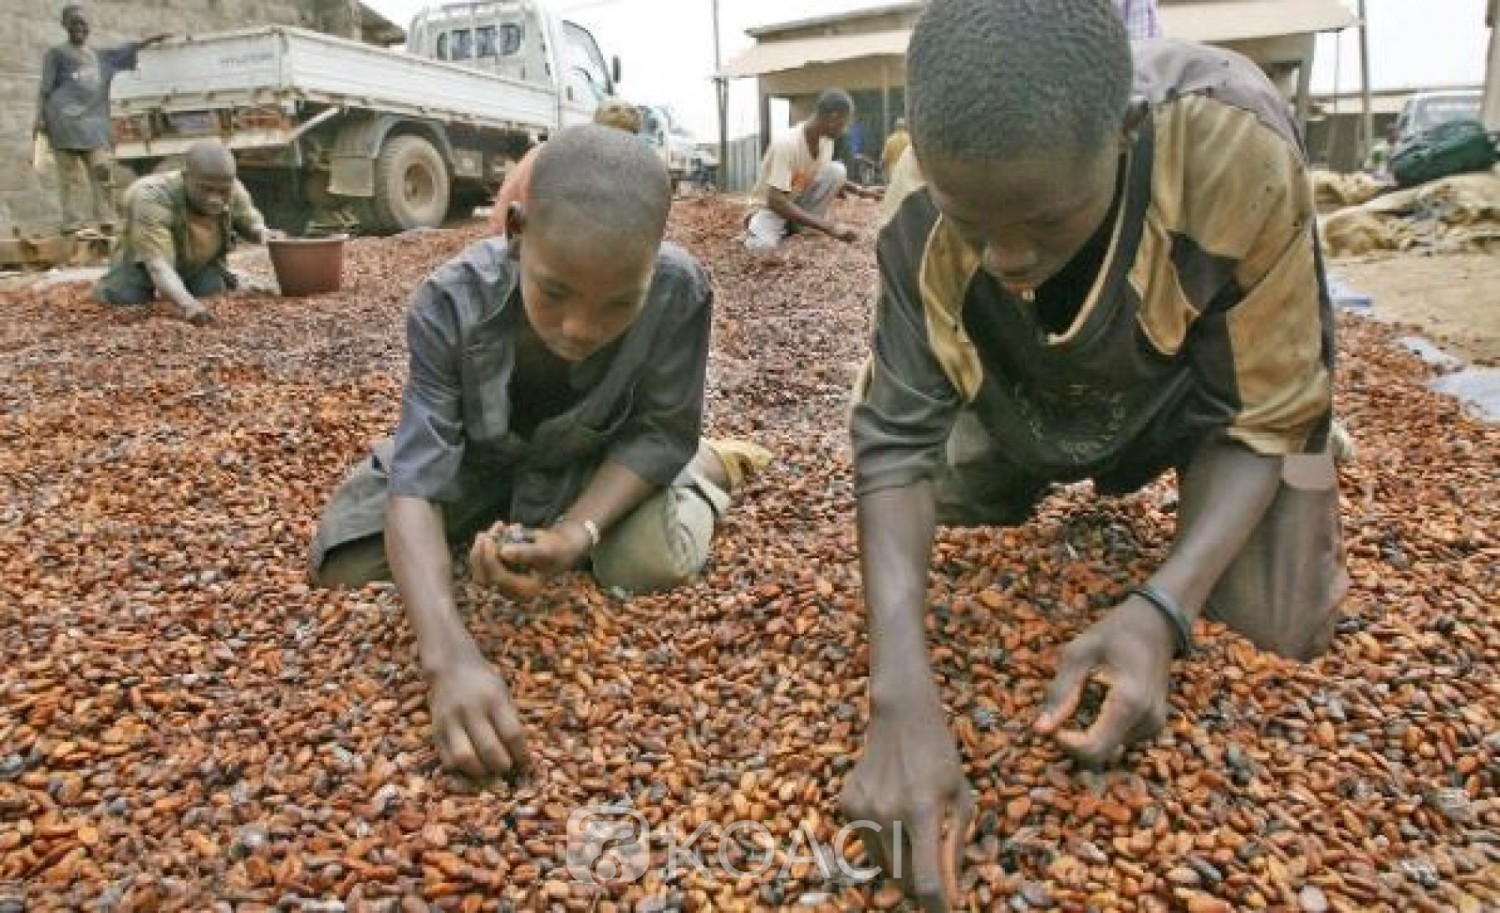 Côte d'Ivoire: Travail d'enfants dans les plantations, des équipes de douanes américaines sur le terrain